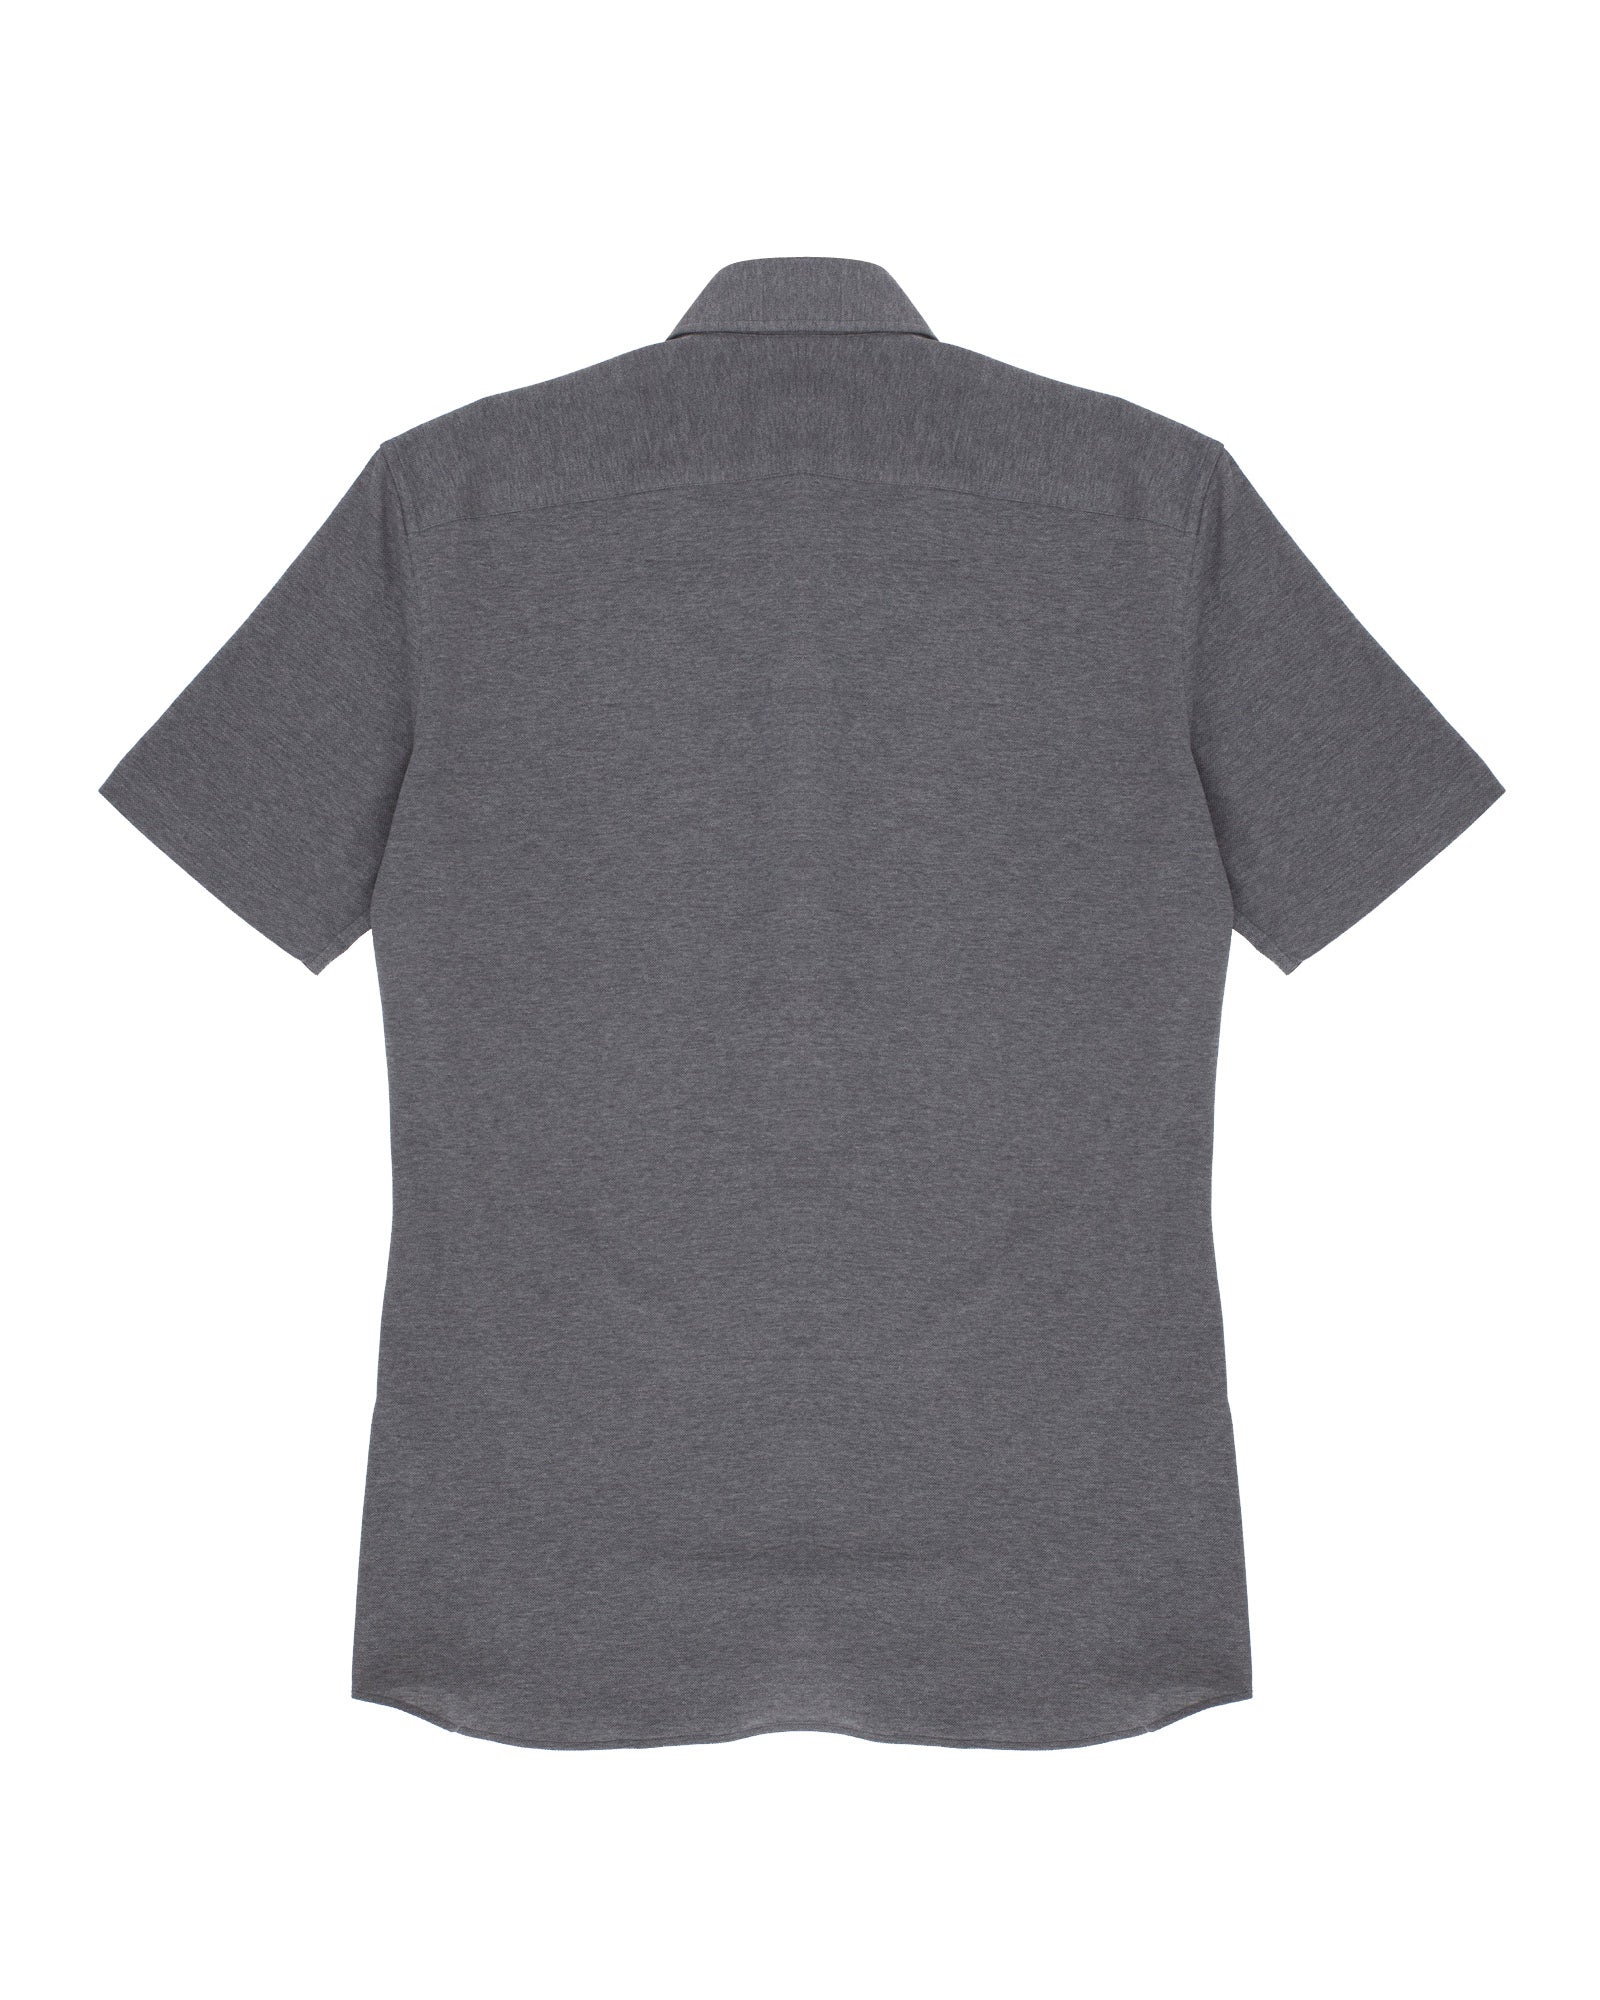 Grey Melange Cotton Pique Short Sleeved Shirt